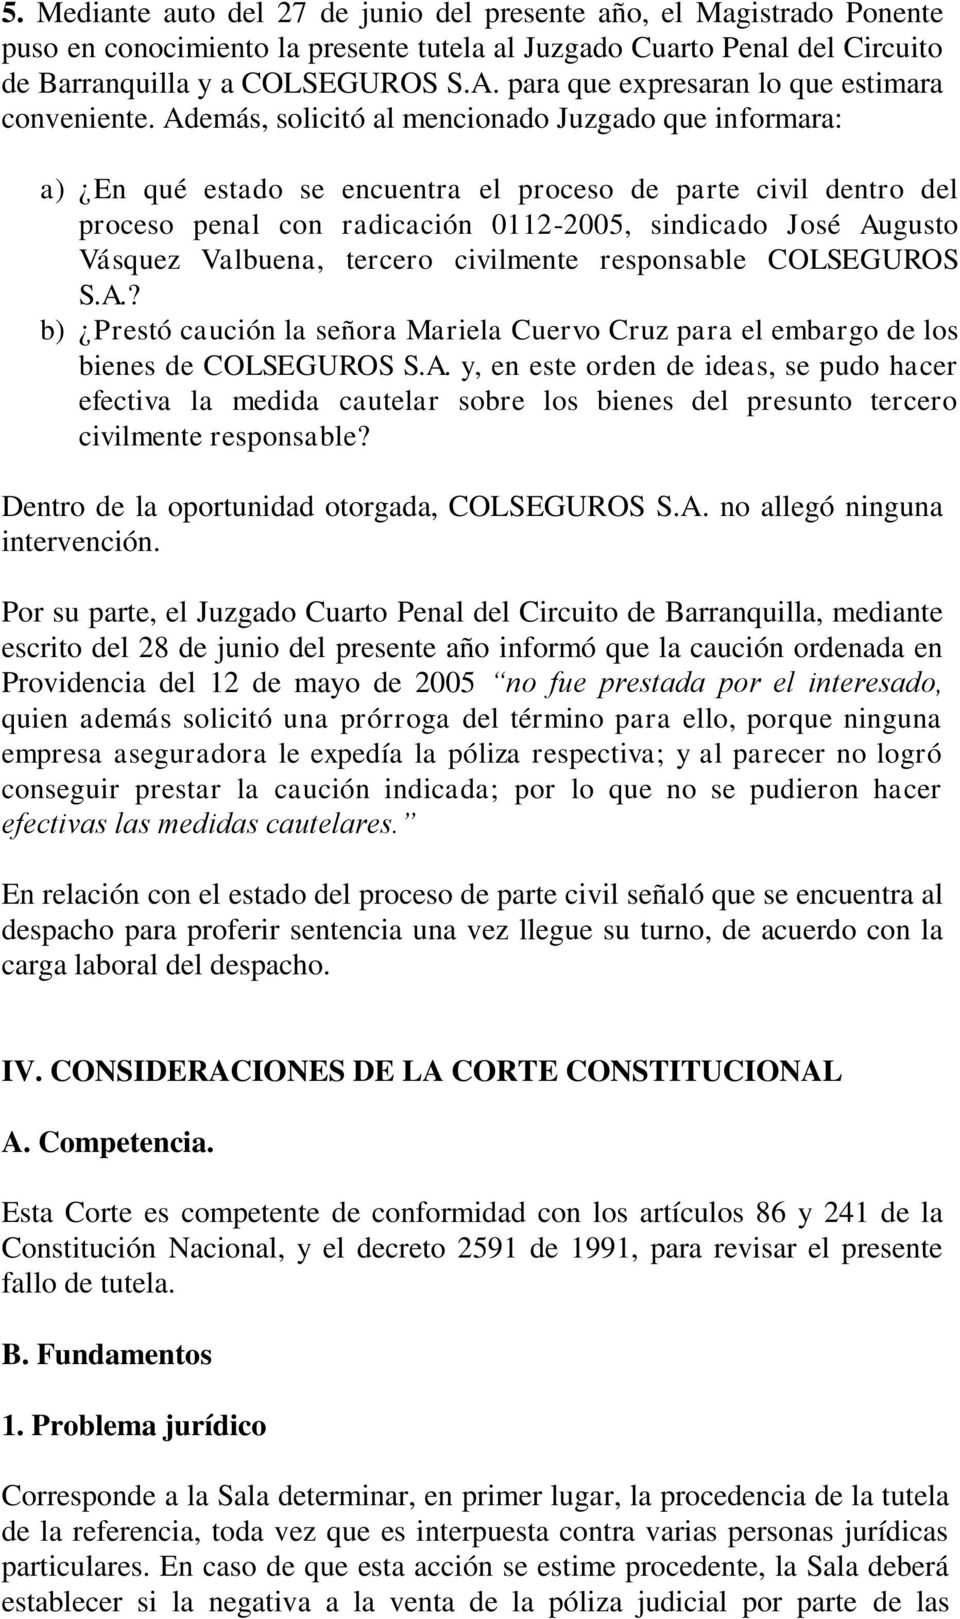 Además, solicitó al mencionado Juzgado que informara: a) En qué estado se encuentra el proceso de parte civil dentro del proceso penal con radicación 0112-2005, sindicado José Augusto Vásquez